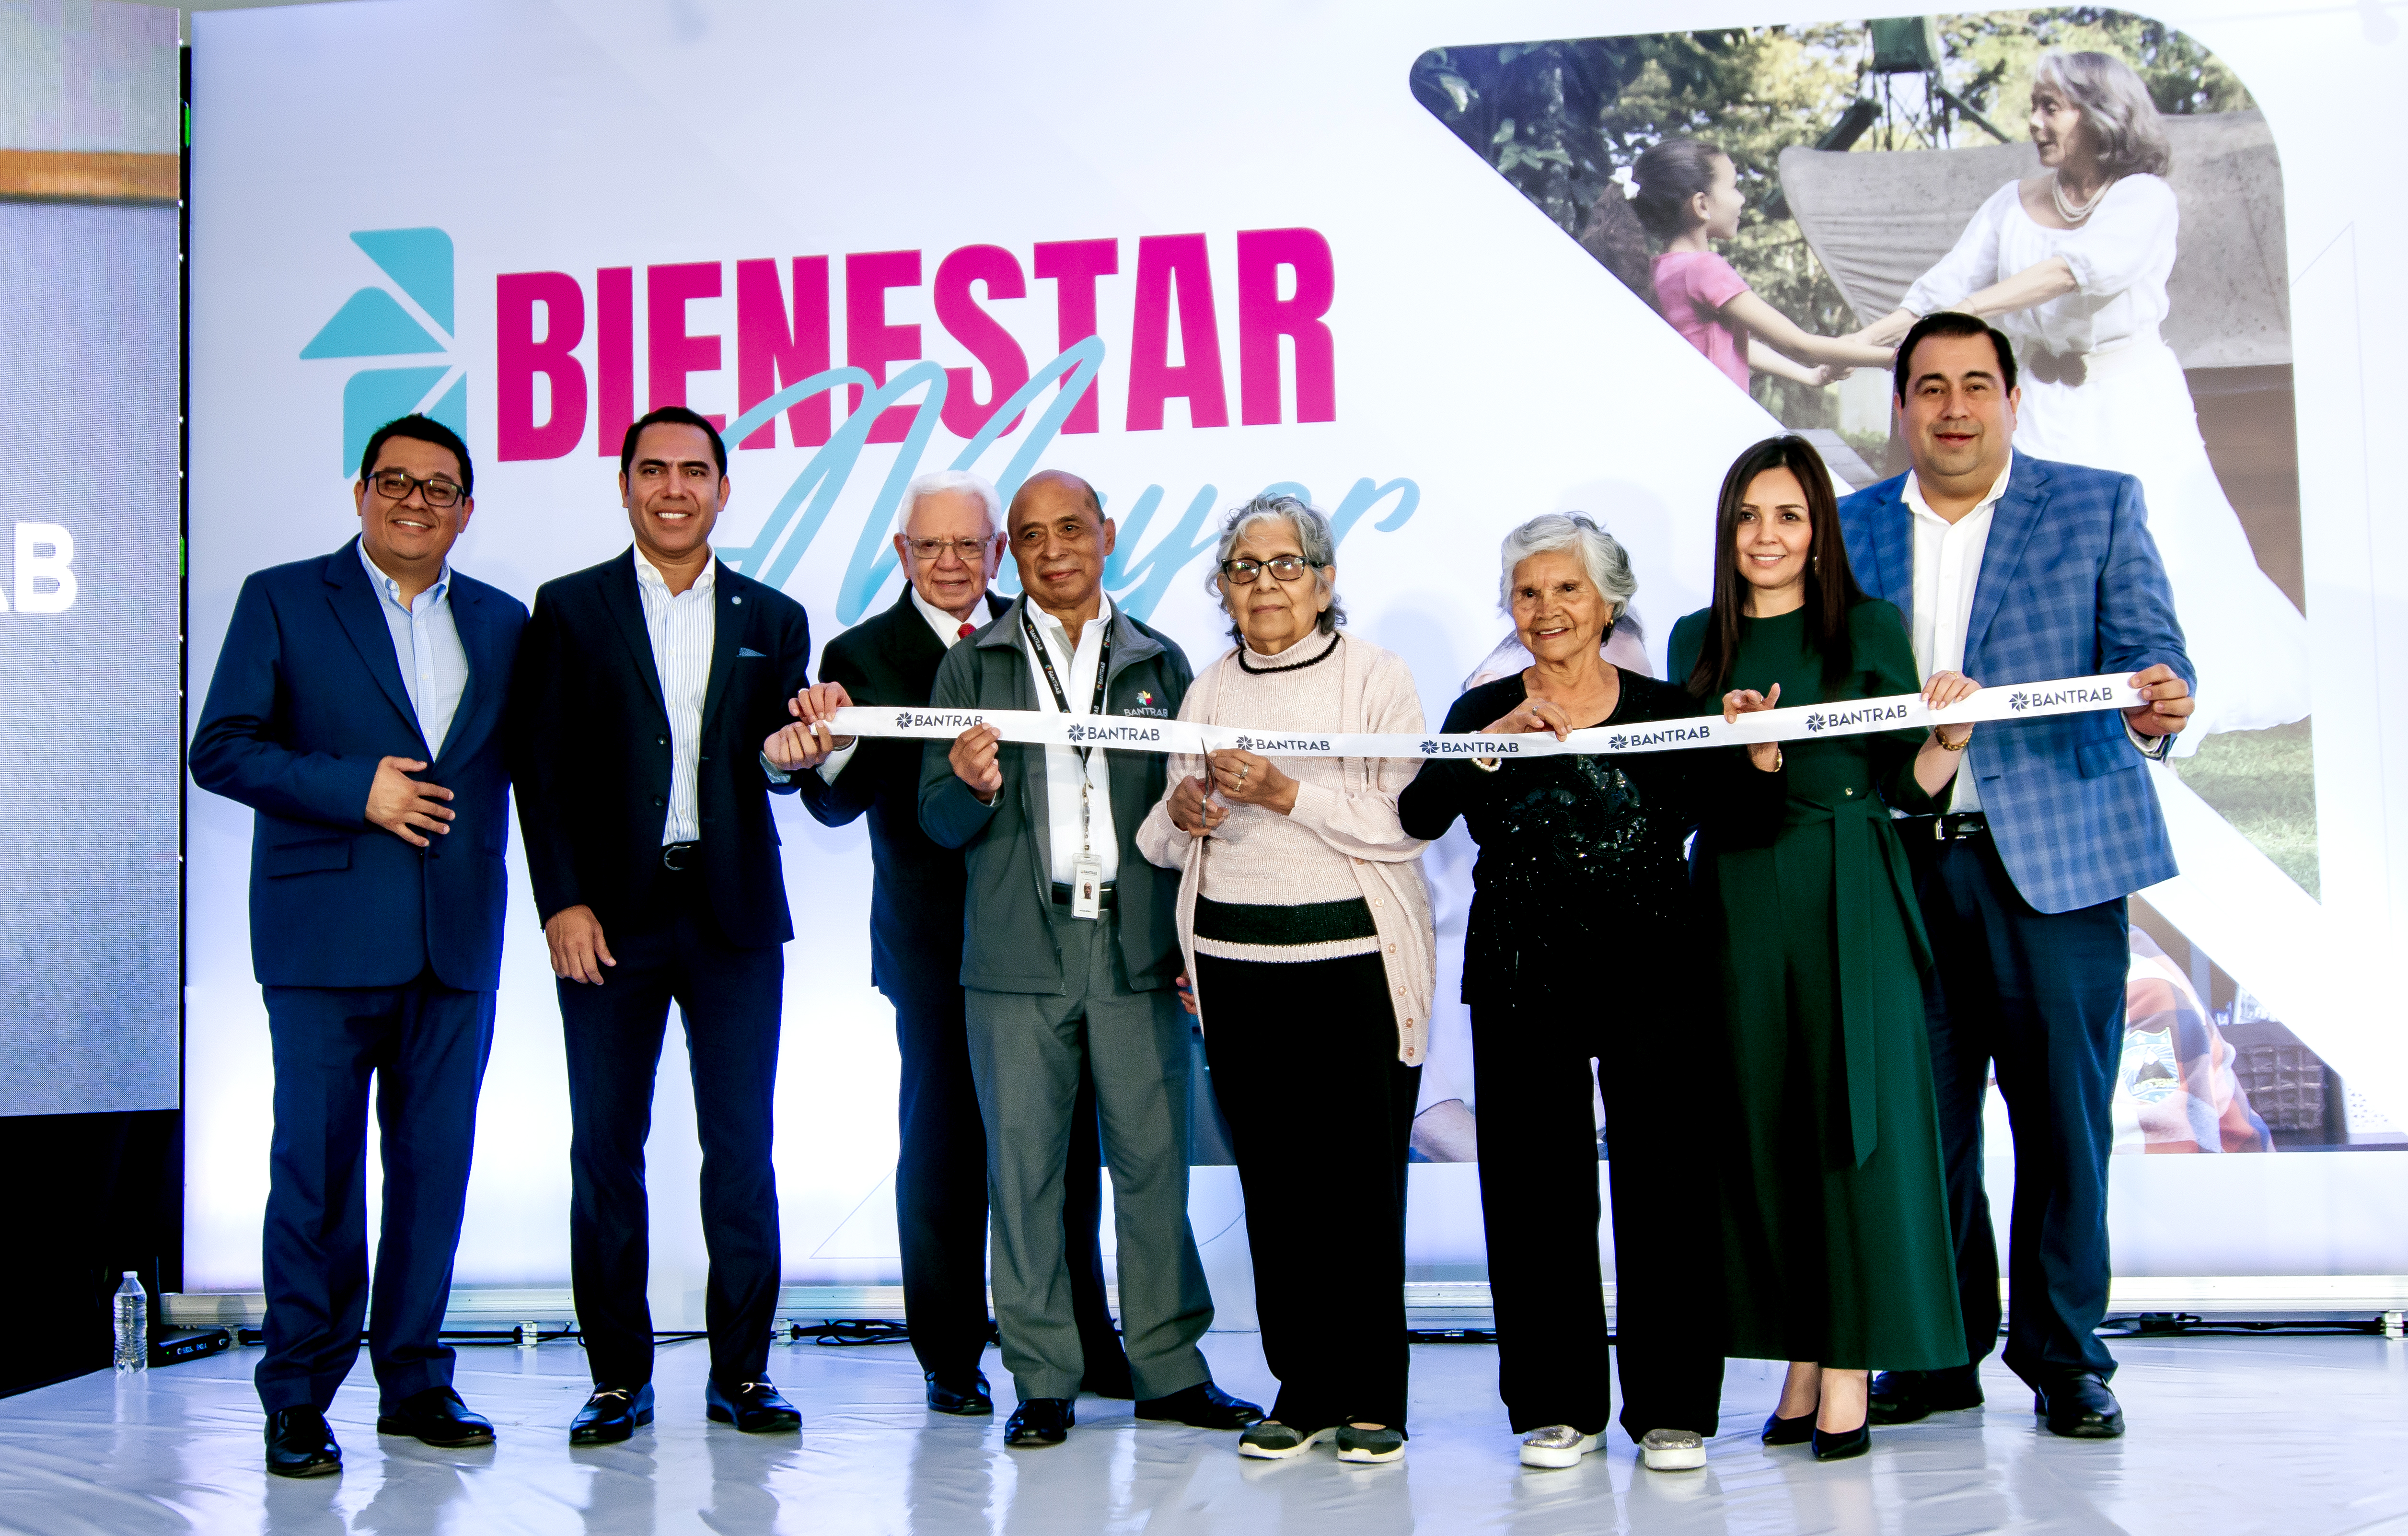 Bienestar Mayor, un programa financiero y social diseñado para reconocer los años de esfuerzo de personas mayores de 60 años que trabajaron por la calidad de vida de los guatemaltecos. Foto Prensa Libre: Sergio Muñoz